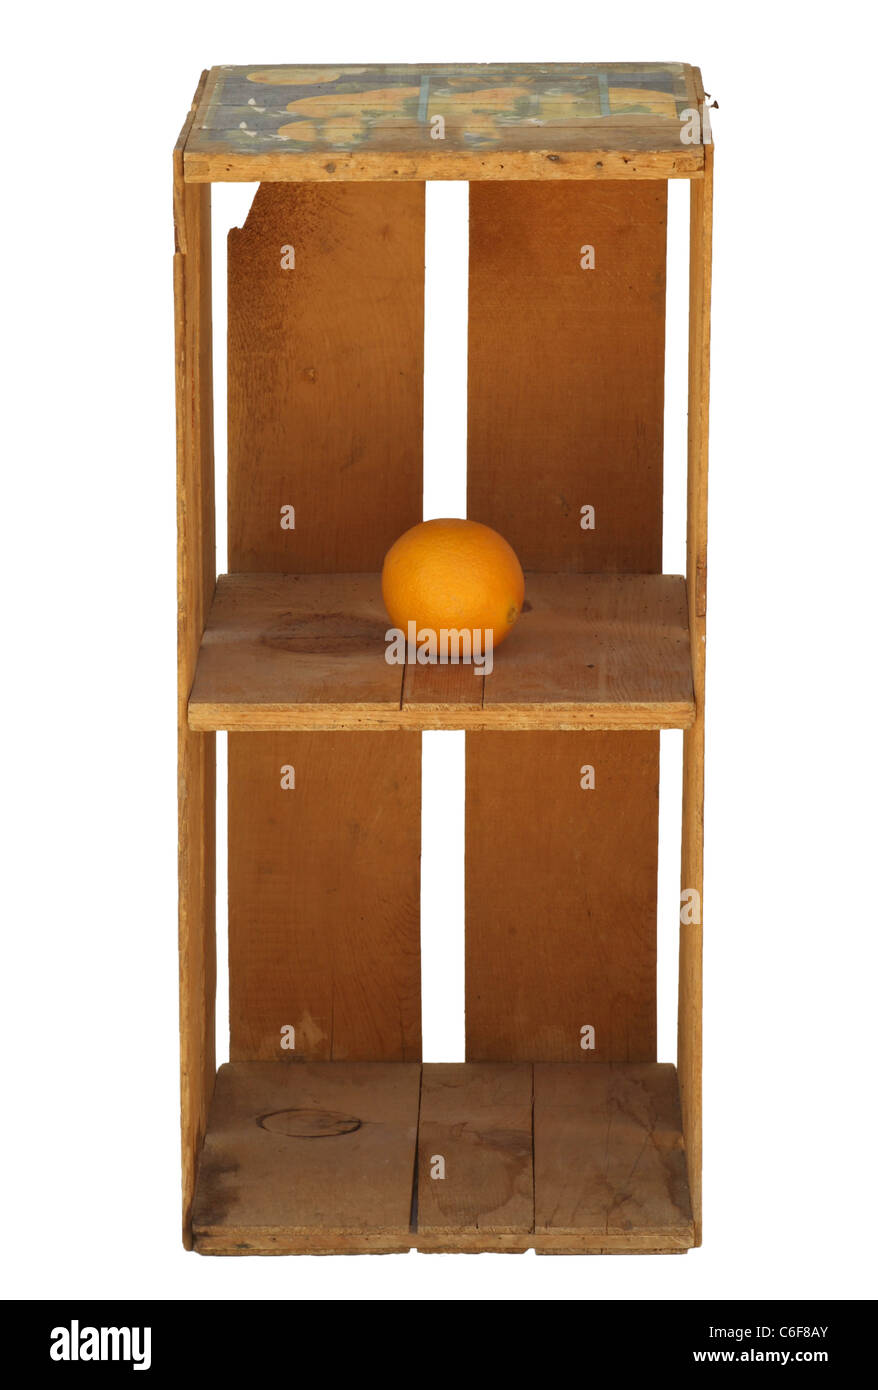 Aufrechte orangefarbene Holzkiste isoliert mit einer Orange auf dem obersten Regal. Die Kiste ist vintage, aber sauber und sieht neu aus. Stockfoto